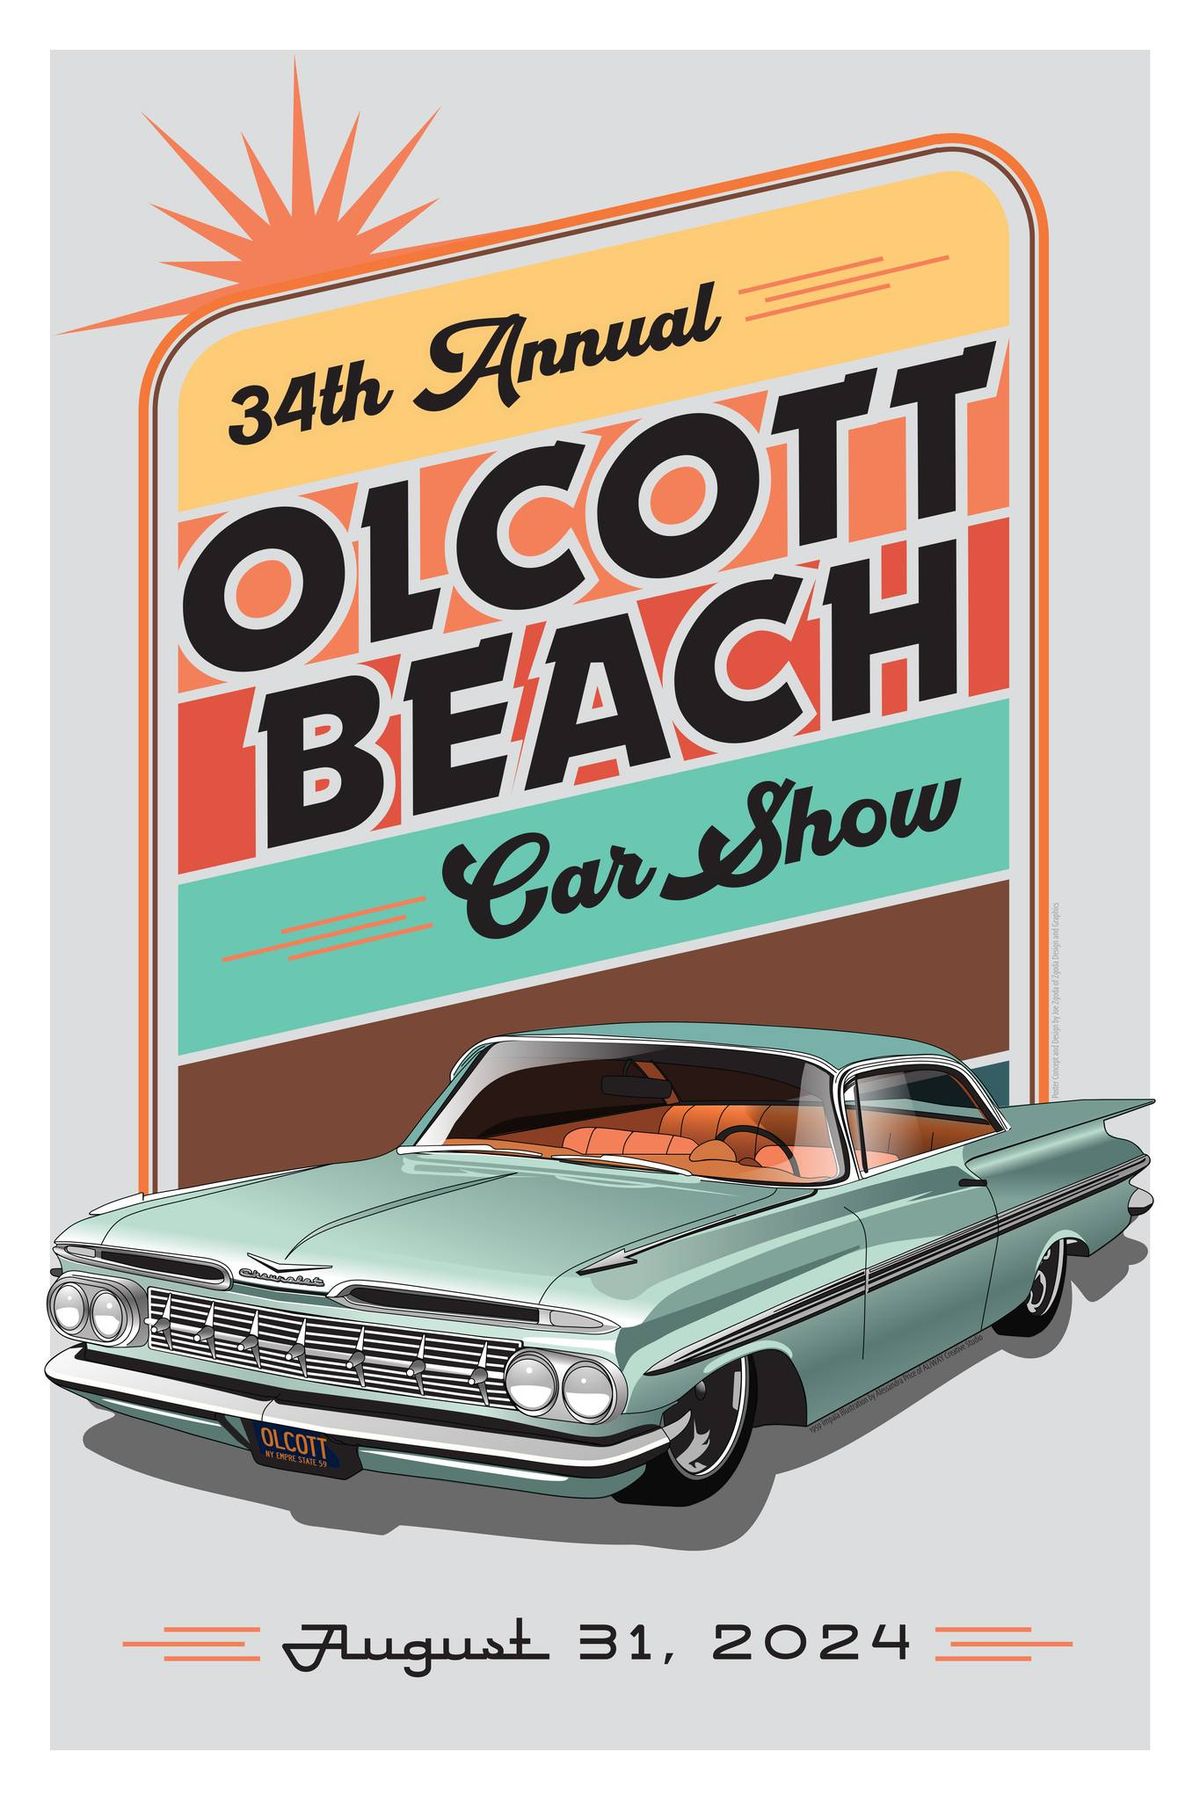 2024 Olcott Beach 34th Annual Car Show